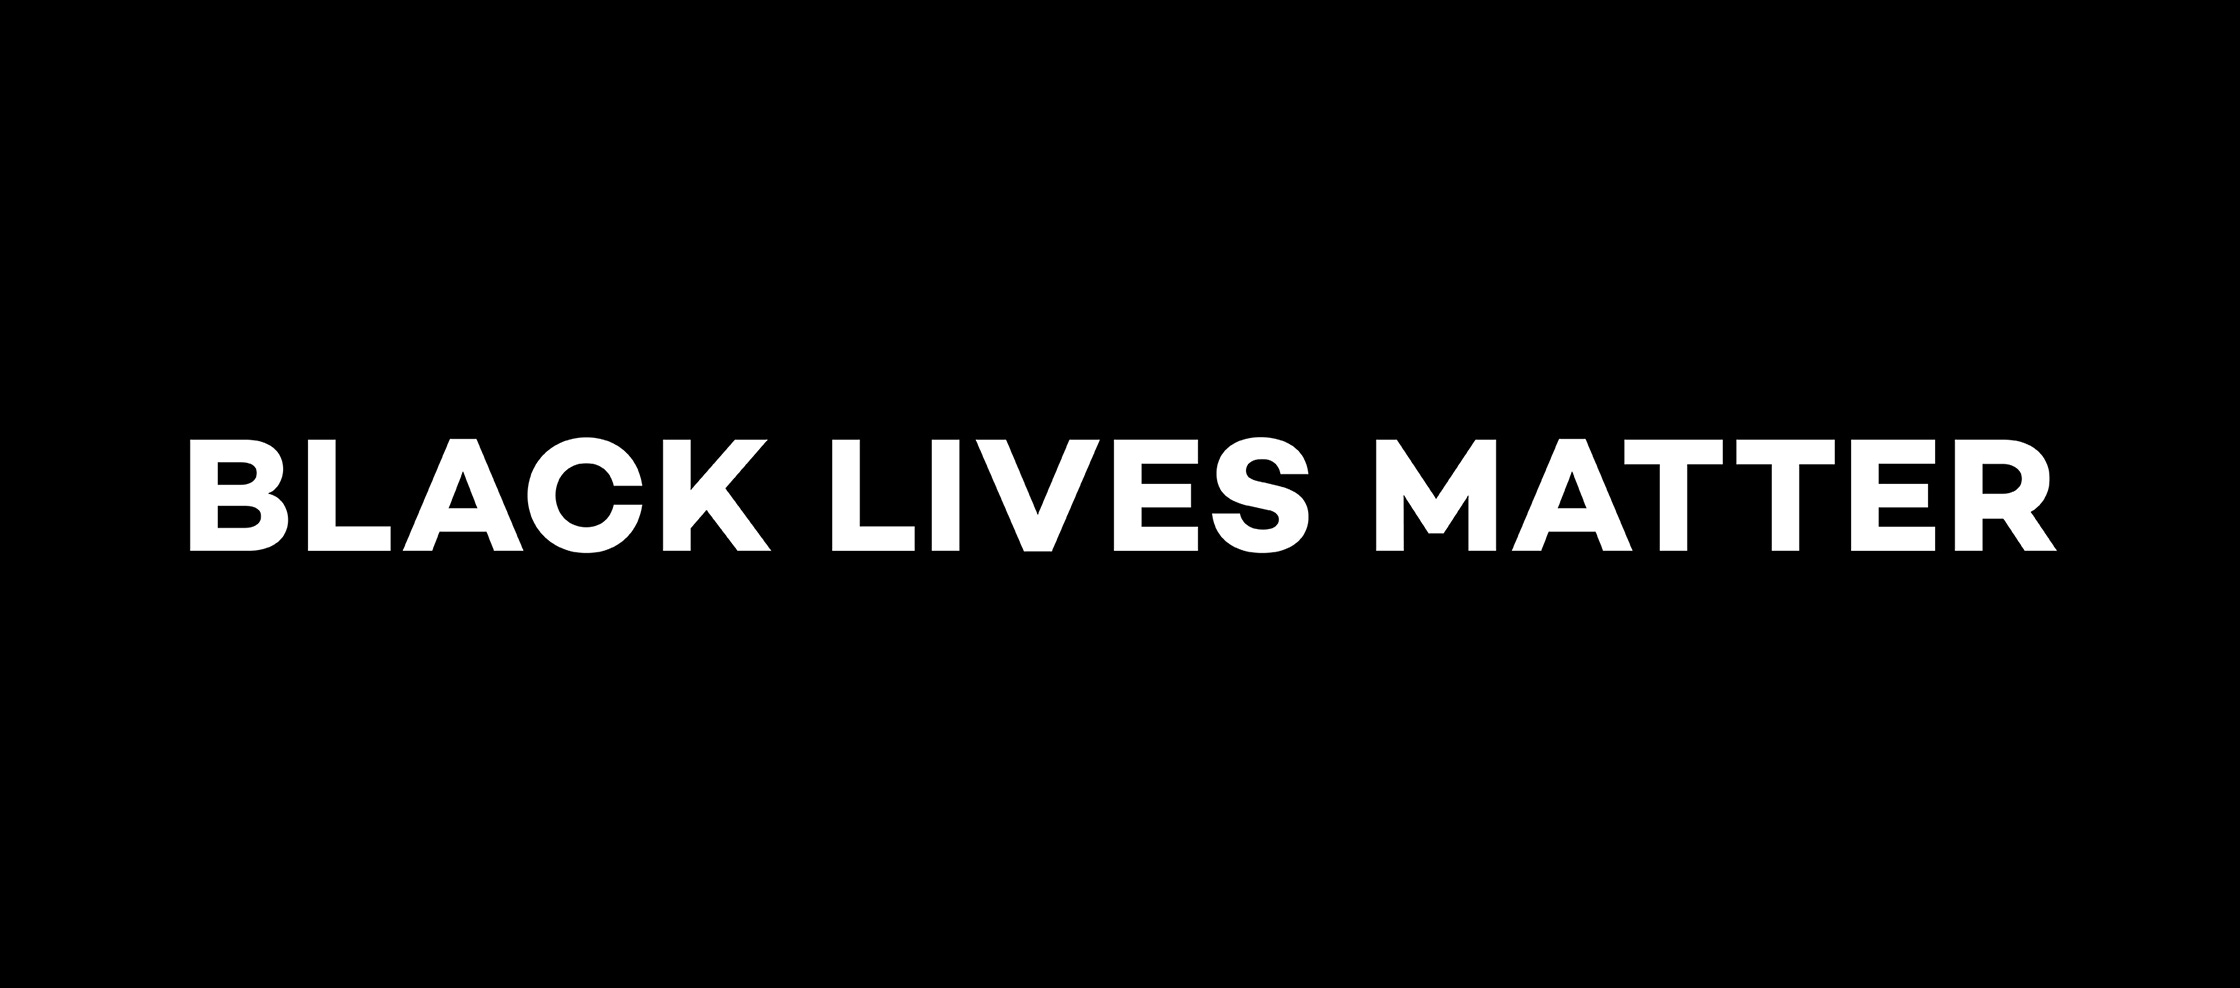 Black Lives Matter white text on black background.